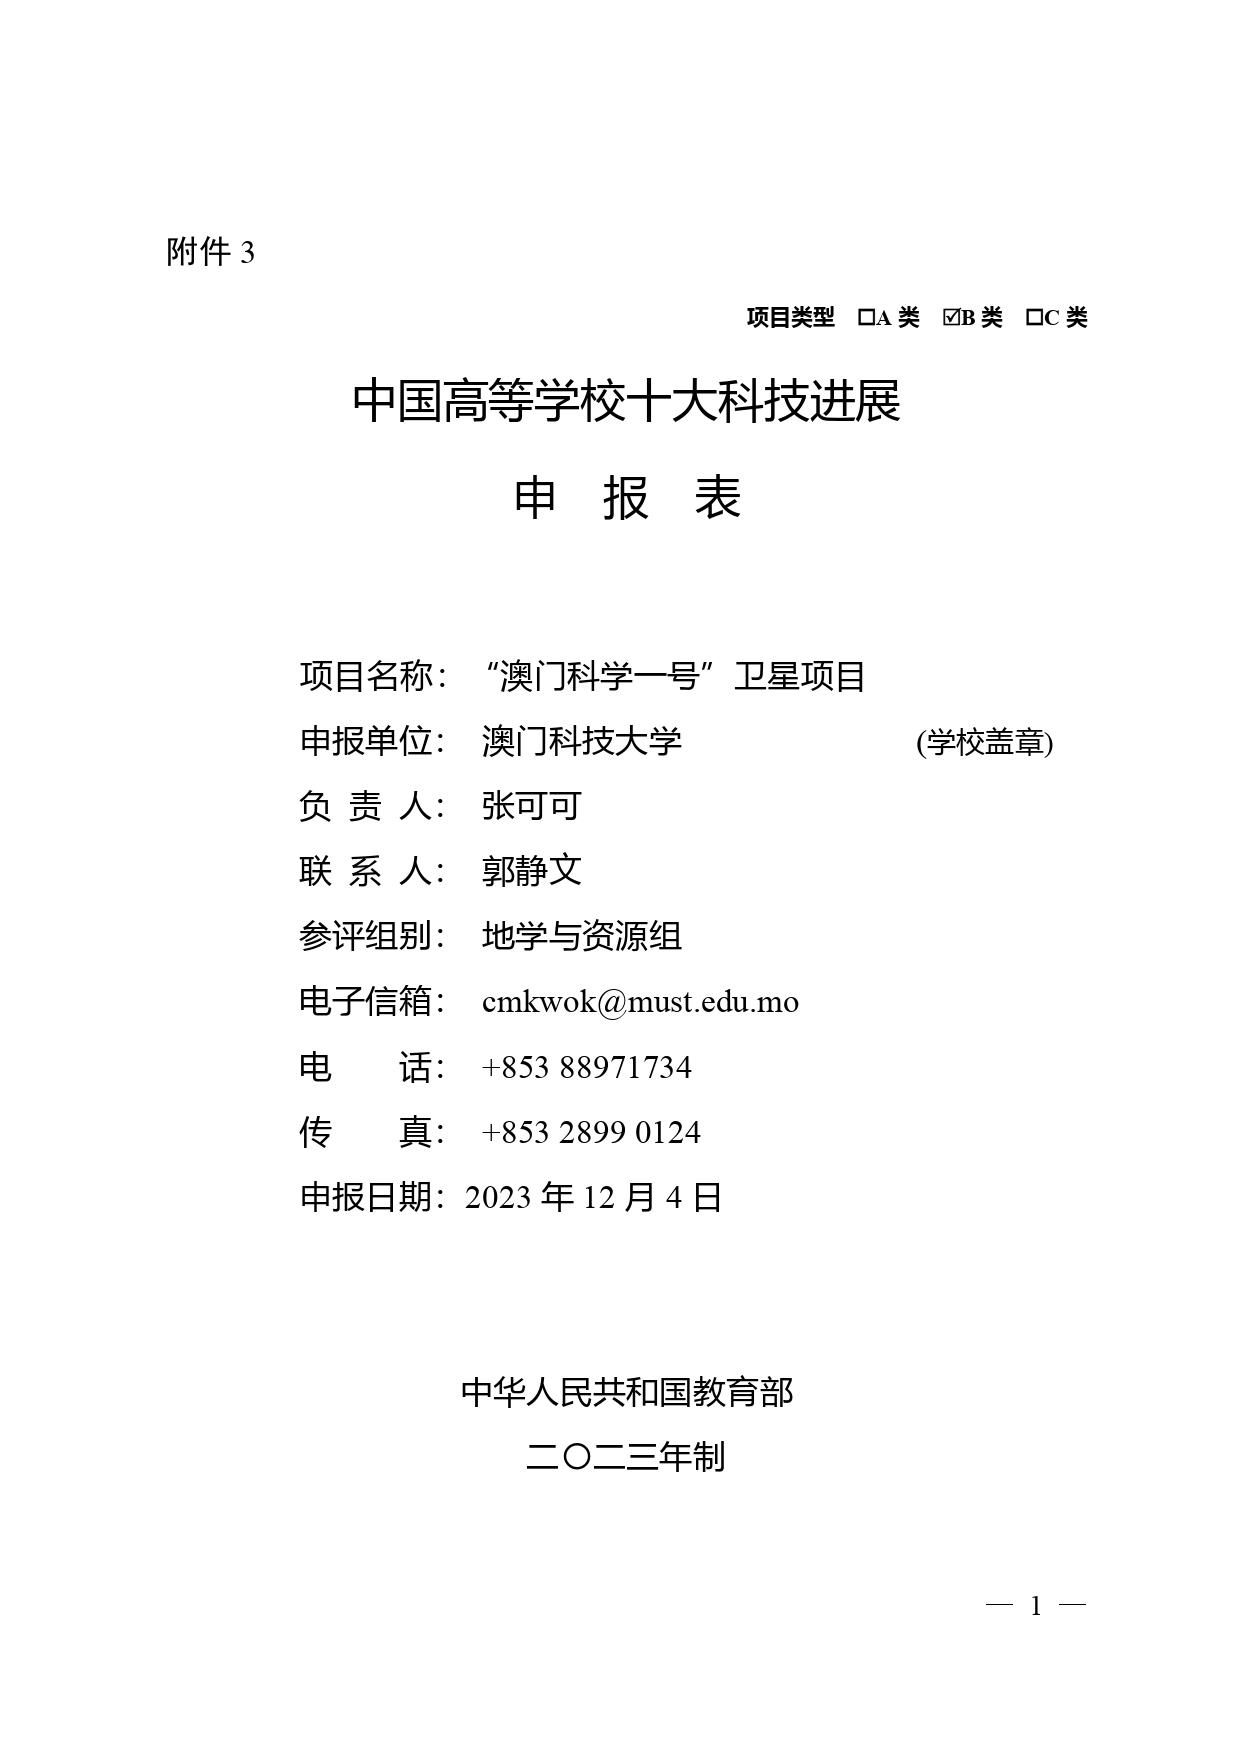 中国高等学校十大科技进展申报表 张可可终版3 page 0001